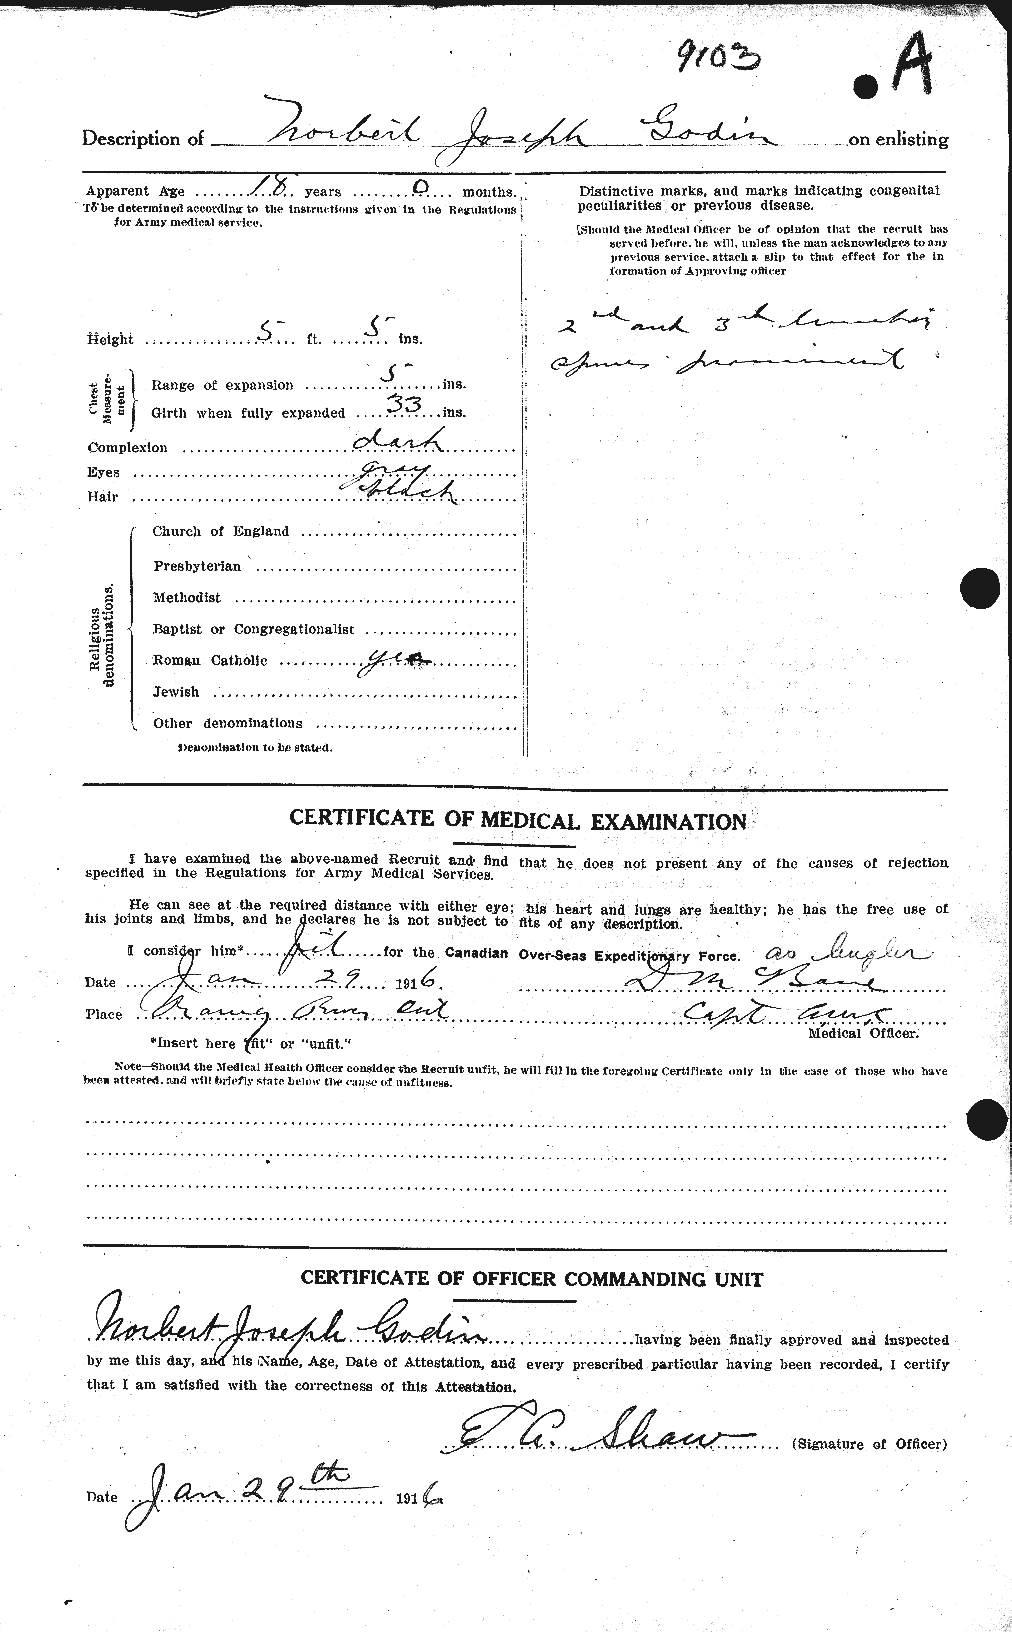 Dossiers du Personnel de la Première Guerre mondiale - CEC 354557b